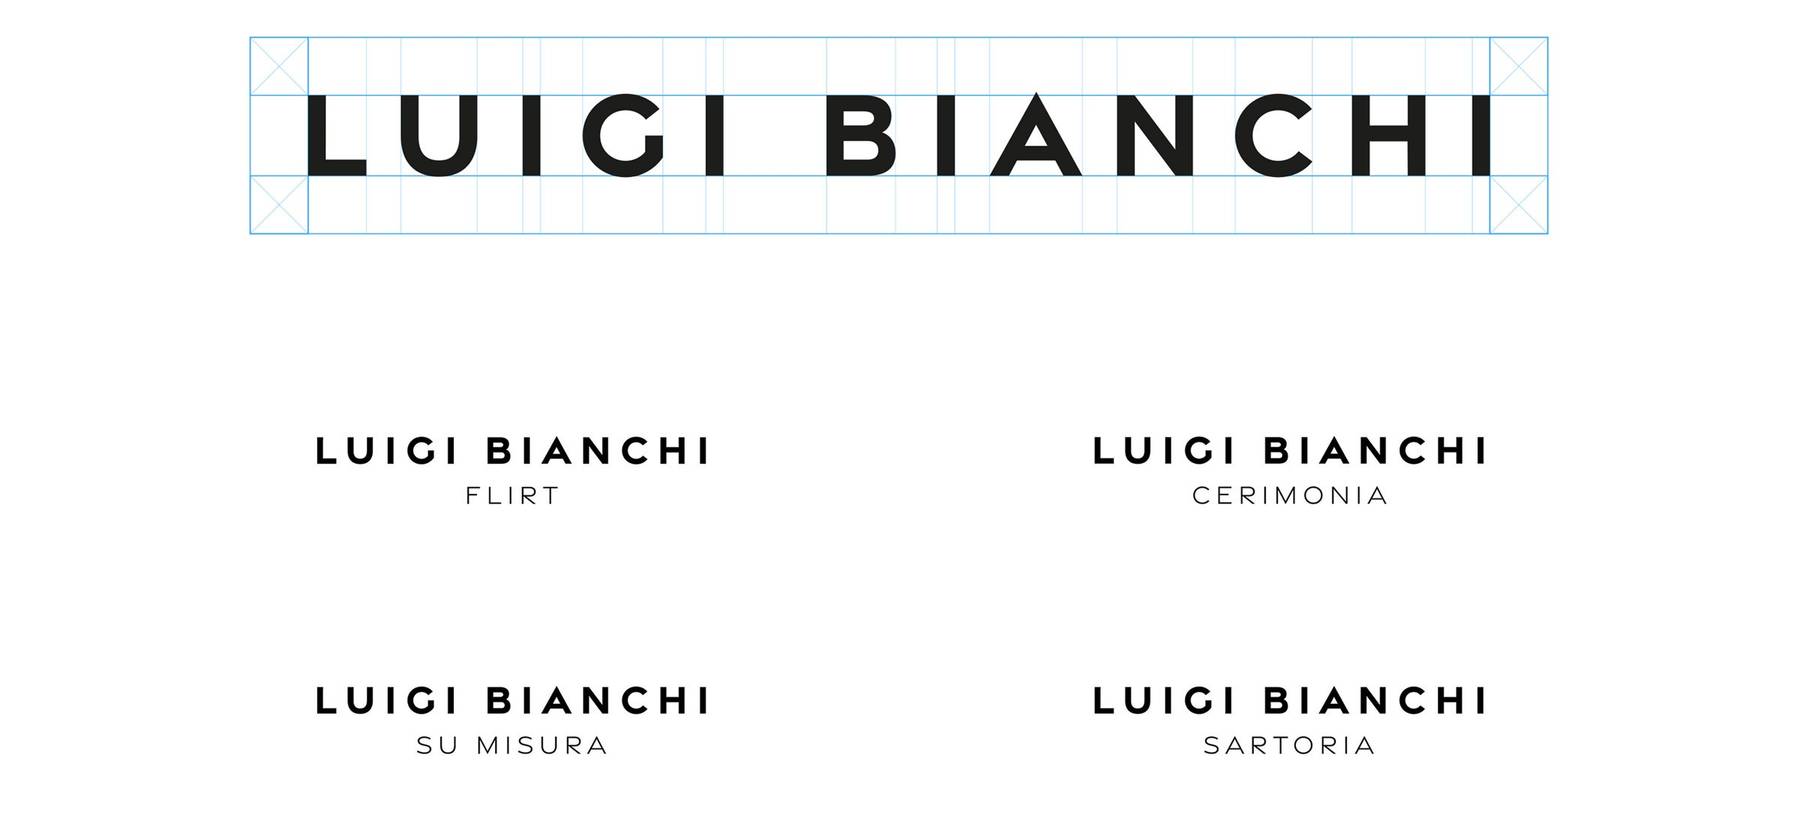 Luigibianchi loghi 02